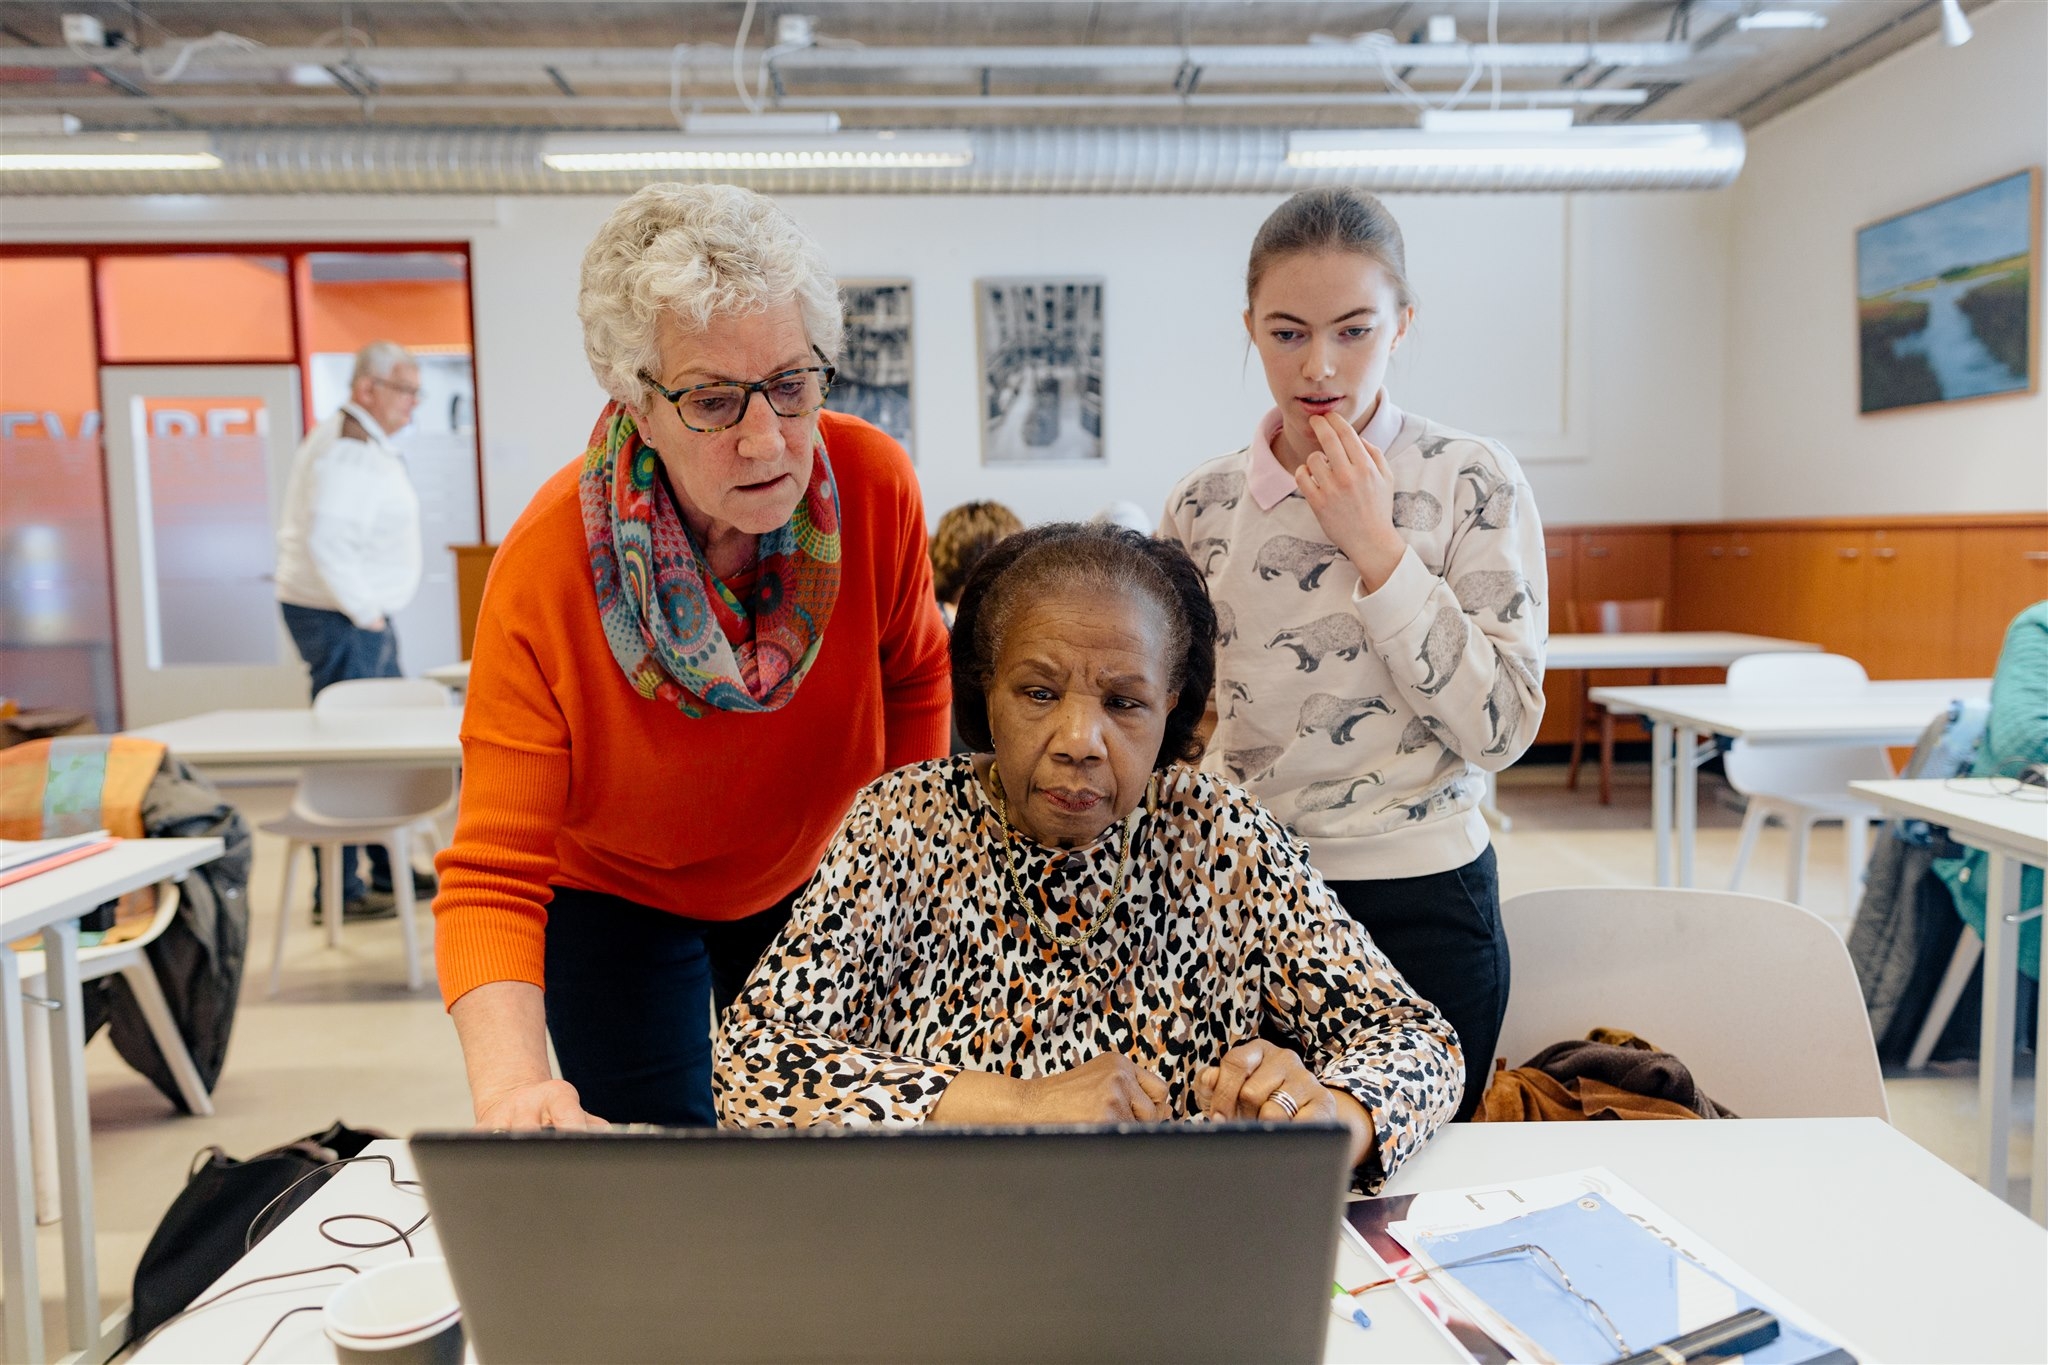 Een oudere vrouw wordt door een bibliotheekmedewerker geholpen met werken op de computer